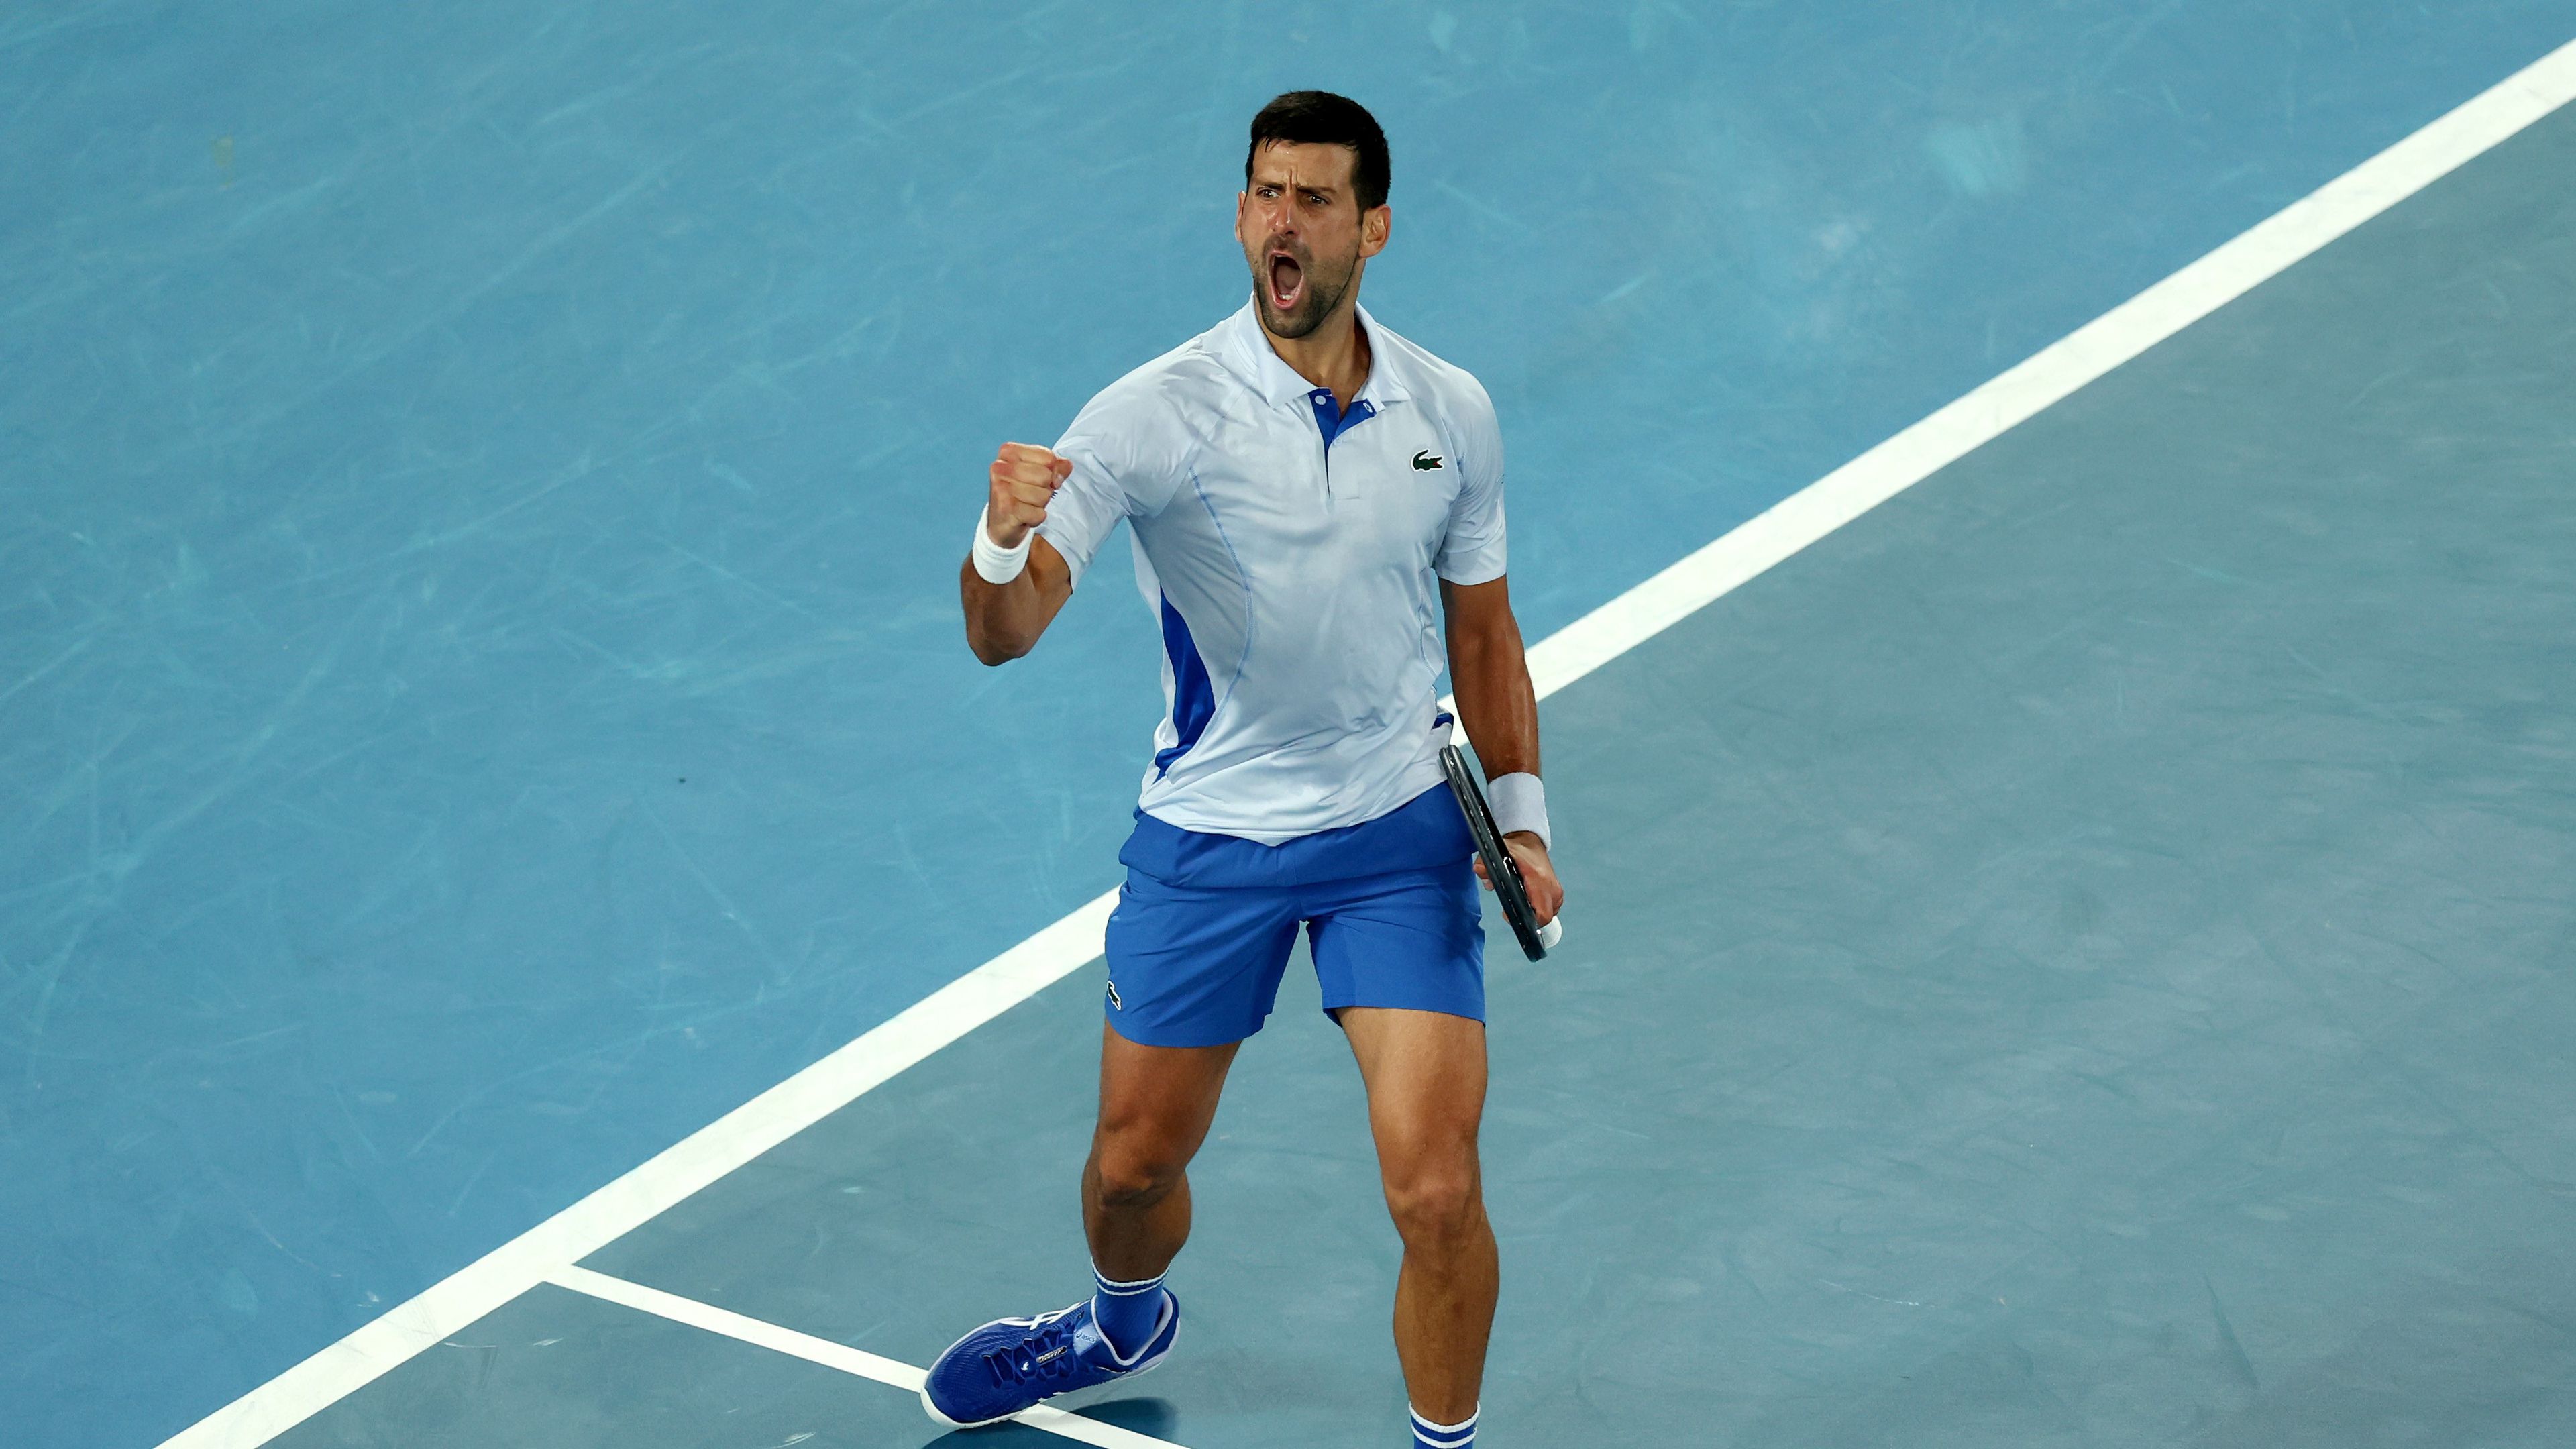 Még hat nyert mérkőzés kell neki a 25. Grand Slam-címig (Fotó: Getty Images)